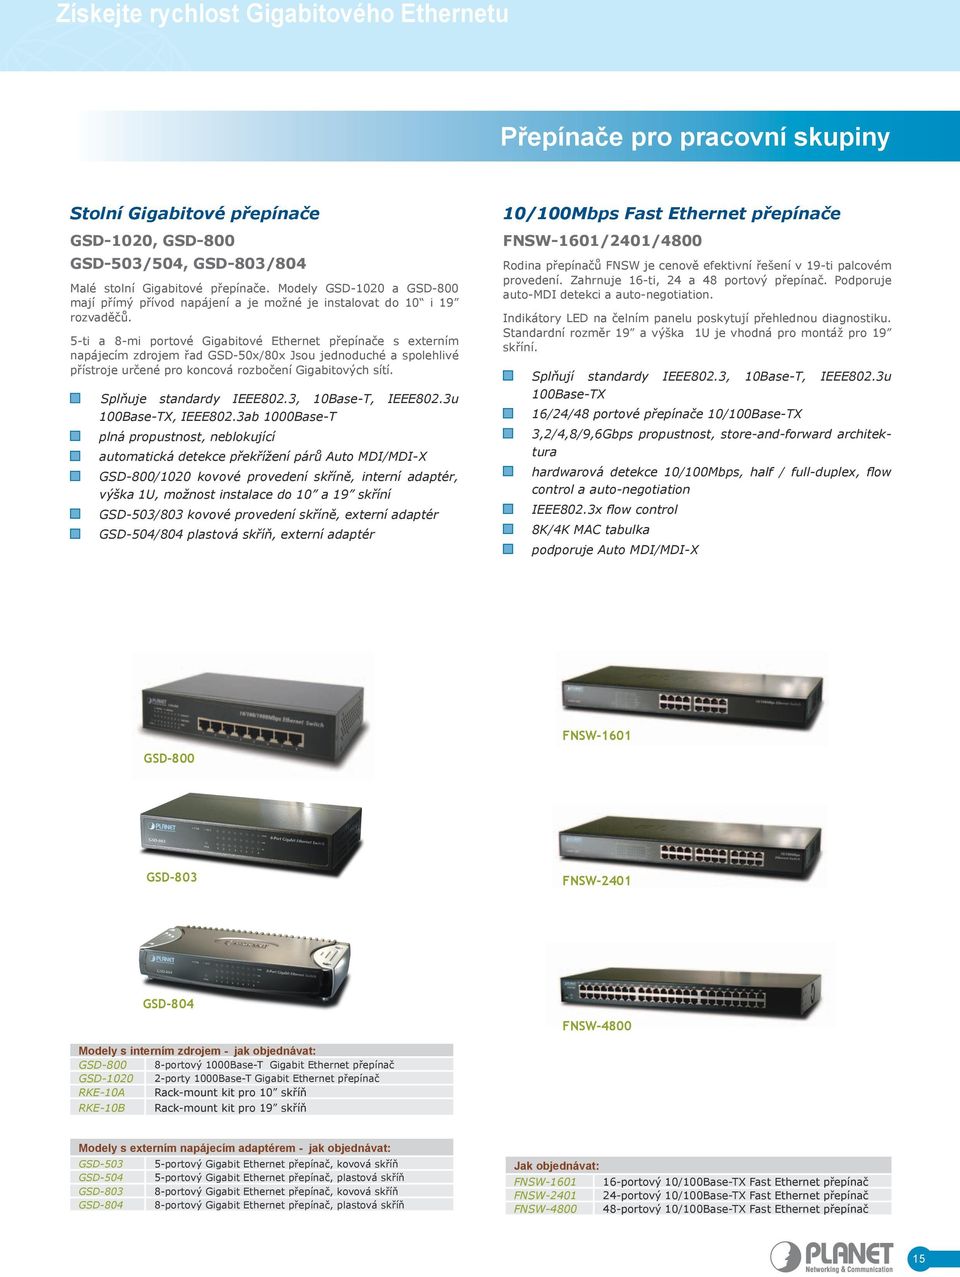 5-ti a 8-mi portové Gigabitové Ethernet přepínače s externím napájecím zdrojem řad GSD-50x/80x Jsou jednoduché a spolehlivé přístroje určené pro koncová rozbočení Gigabitových sítí.